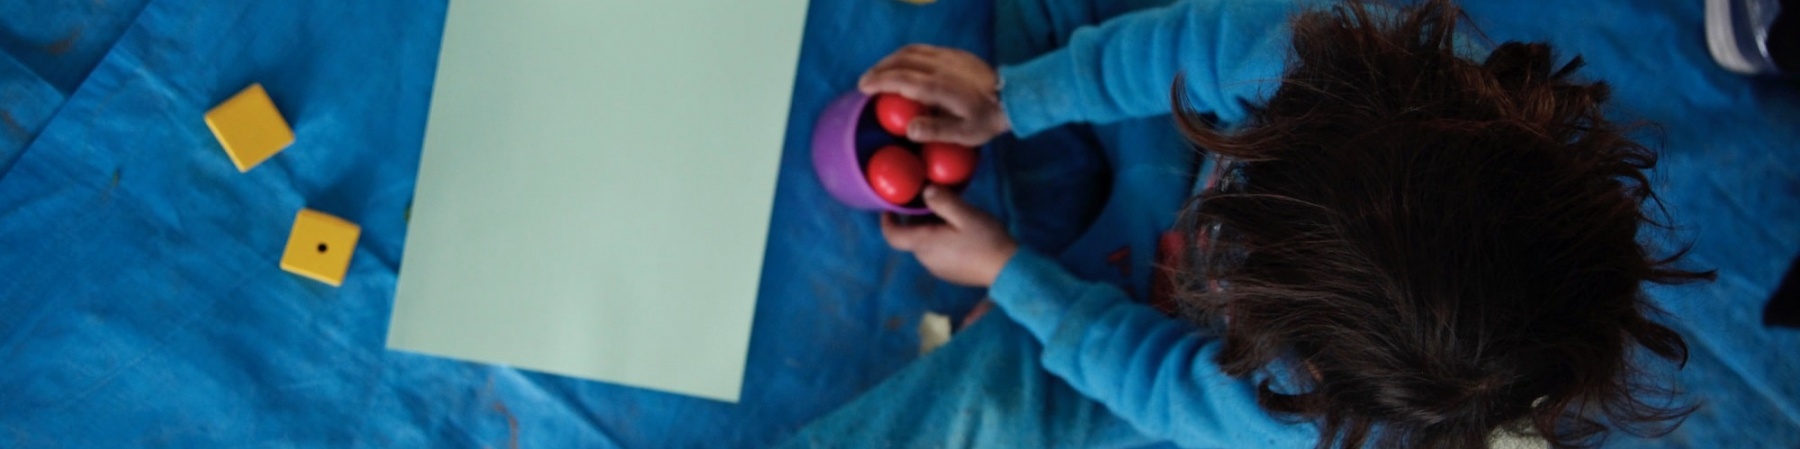 foto dall alto di bimba seduta per terra mentre gioca con delle palline rosse